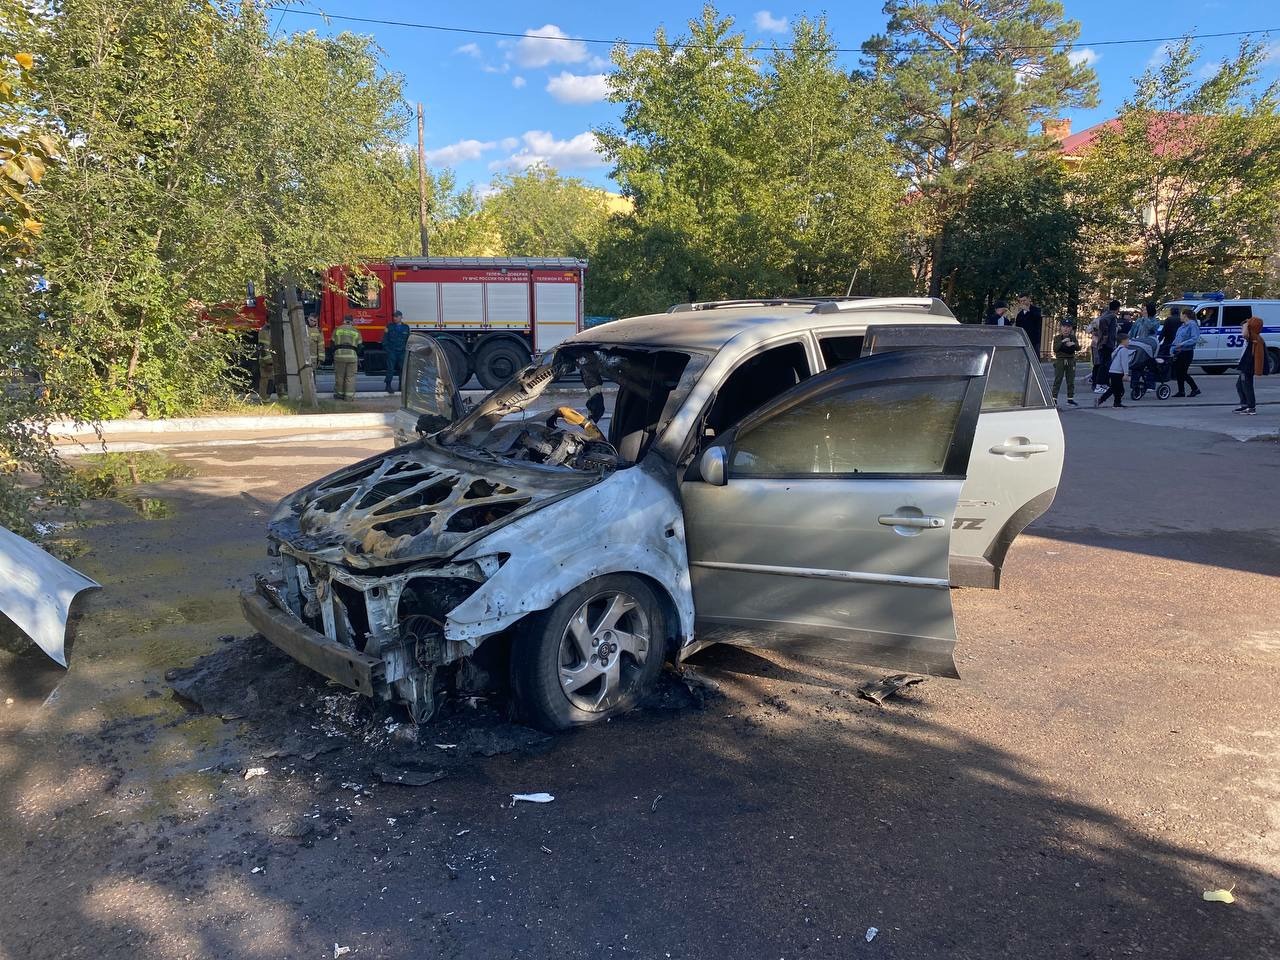 В Улан-Удэ сгорел автомобиль